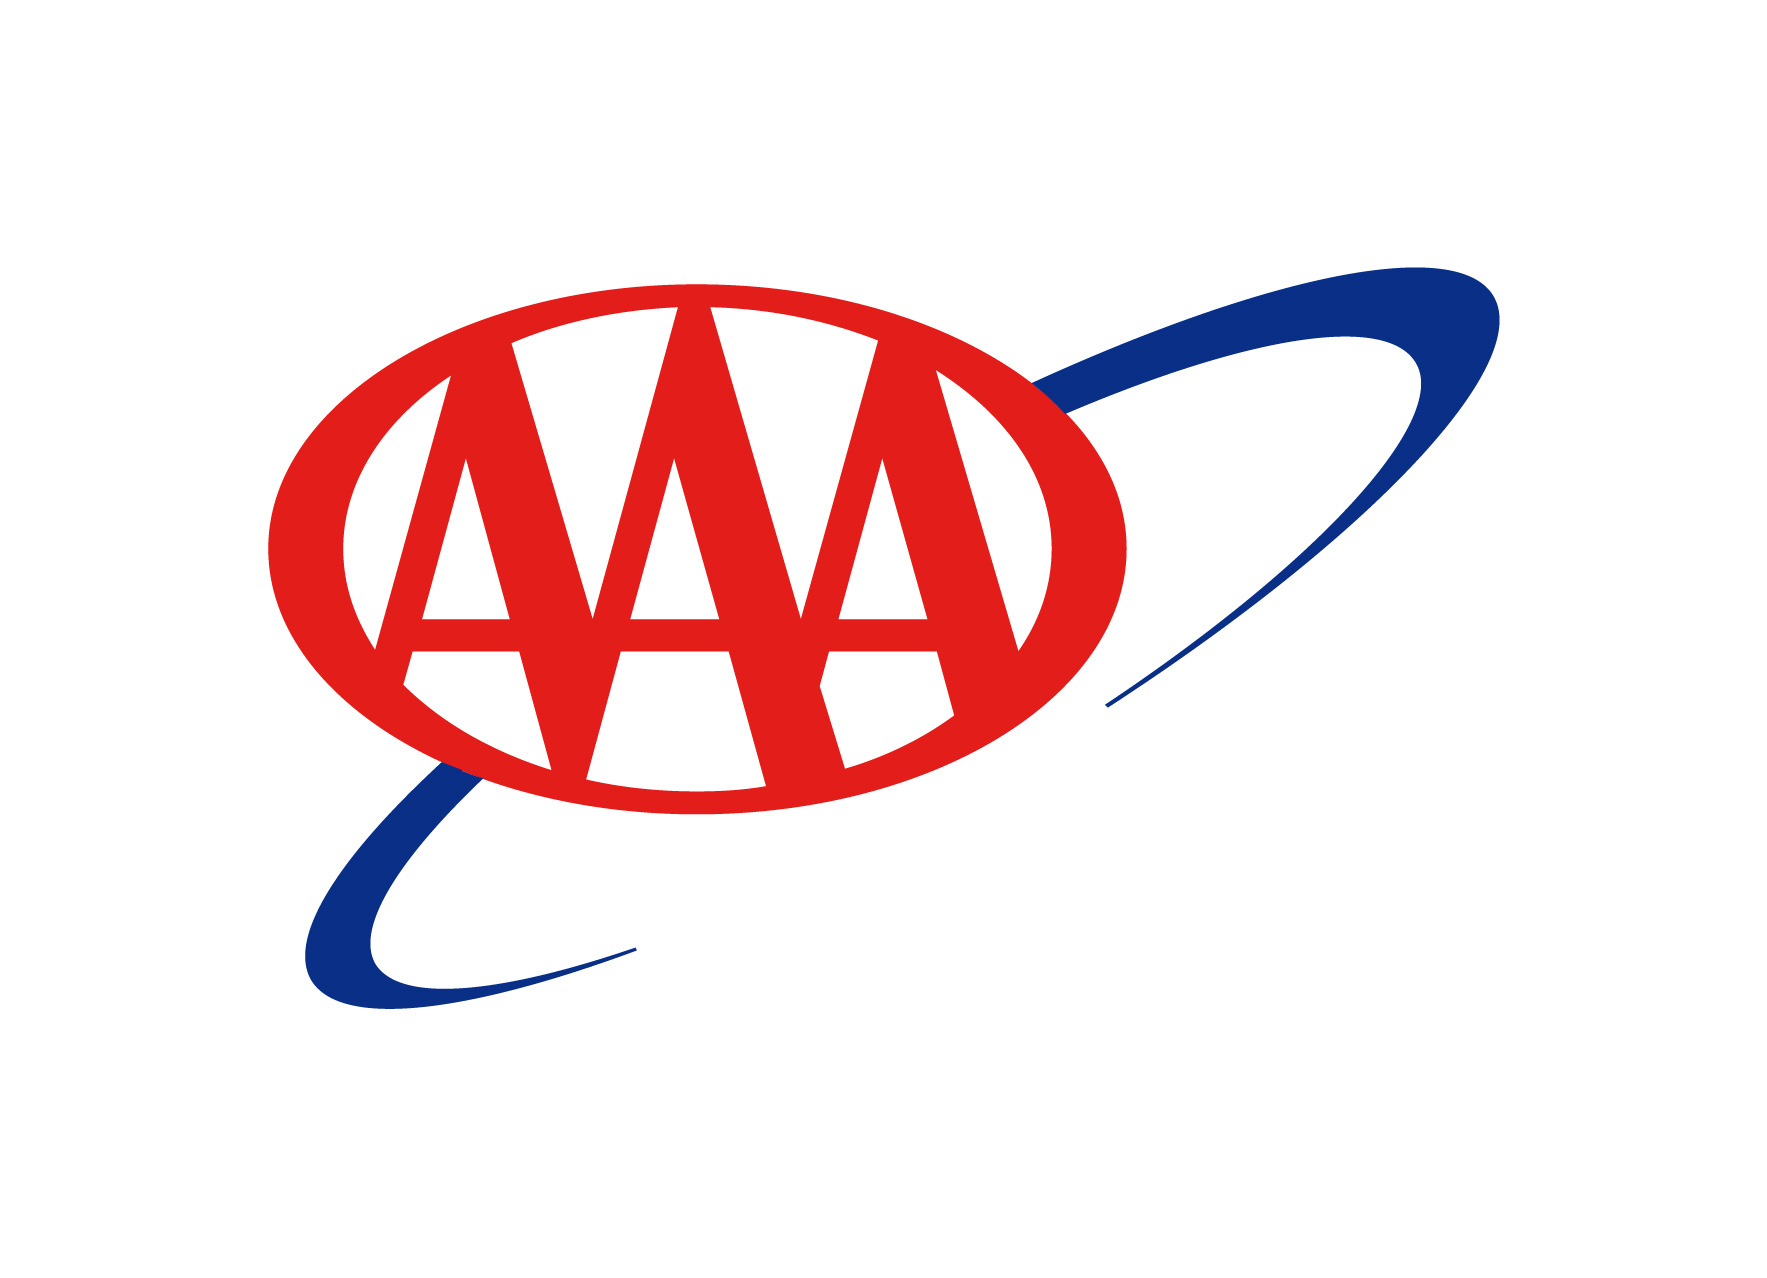 OLLI's new travel partner is the Auto Club (AAA Nebraska).